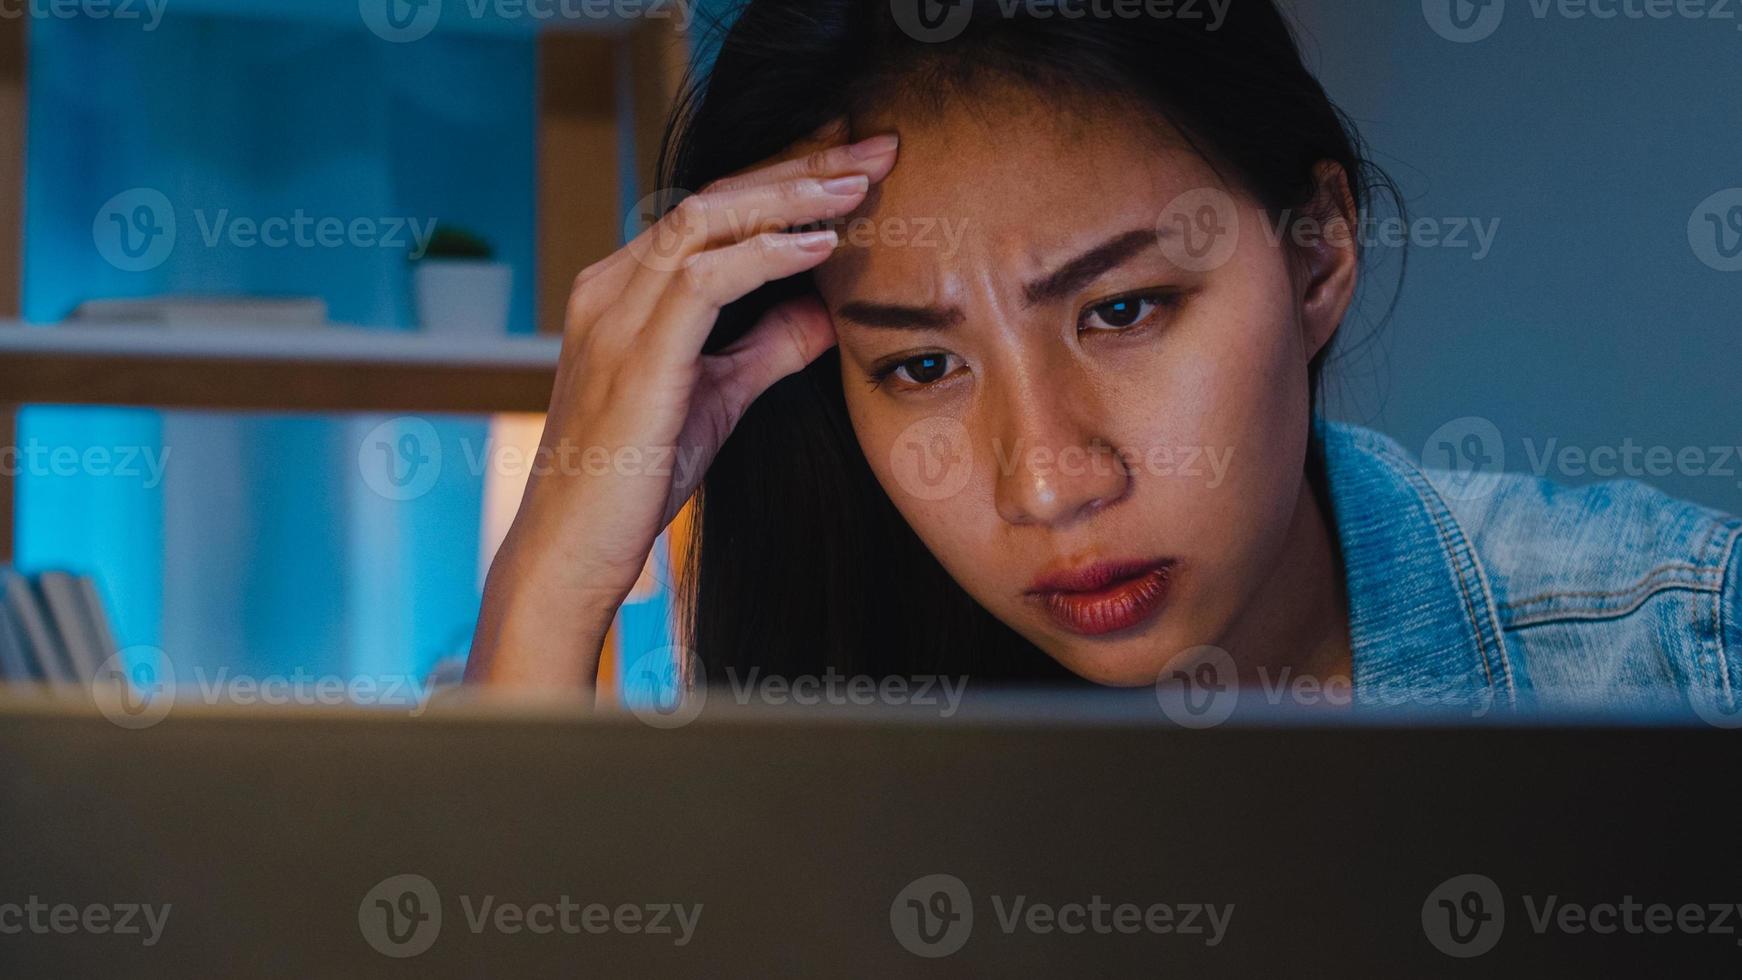 milenar jovem empresária chinesa trabalhando tarde da noite estressada com um problema de pesquisa de projeto no laptop na sala de estar em uma casa moderna. conceito de síndrome de burnout ocupacional de povos da Ásia. foto